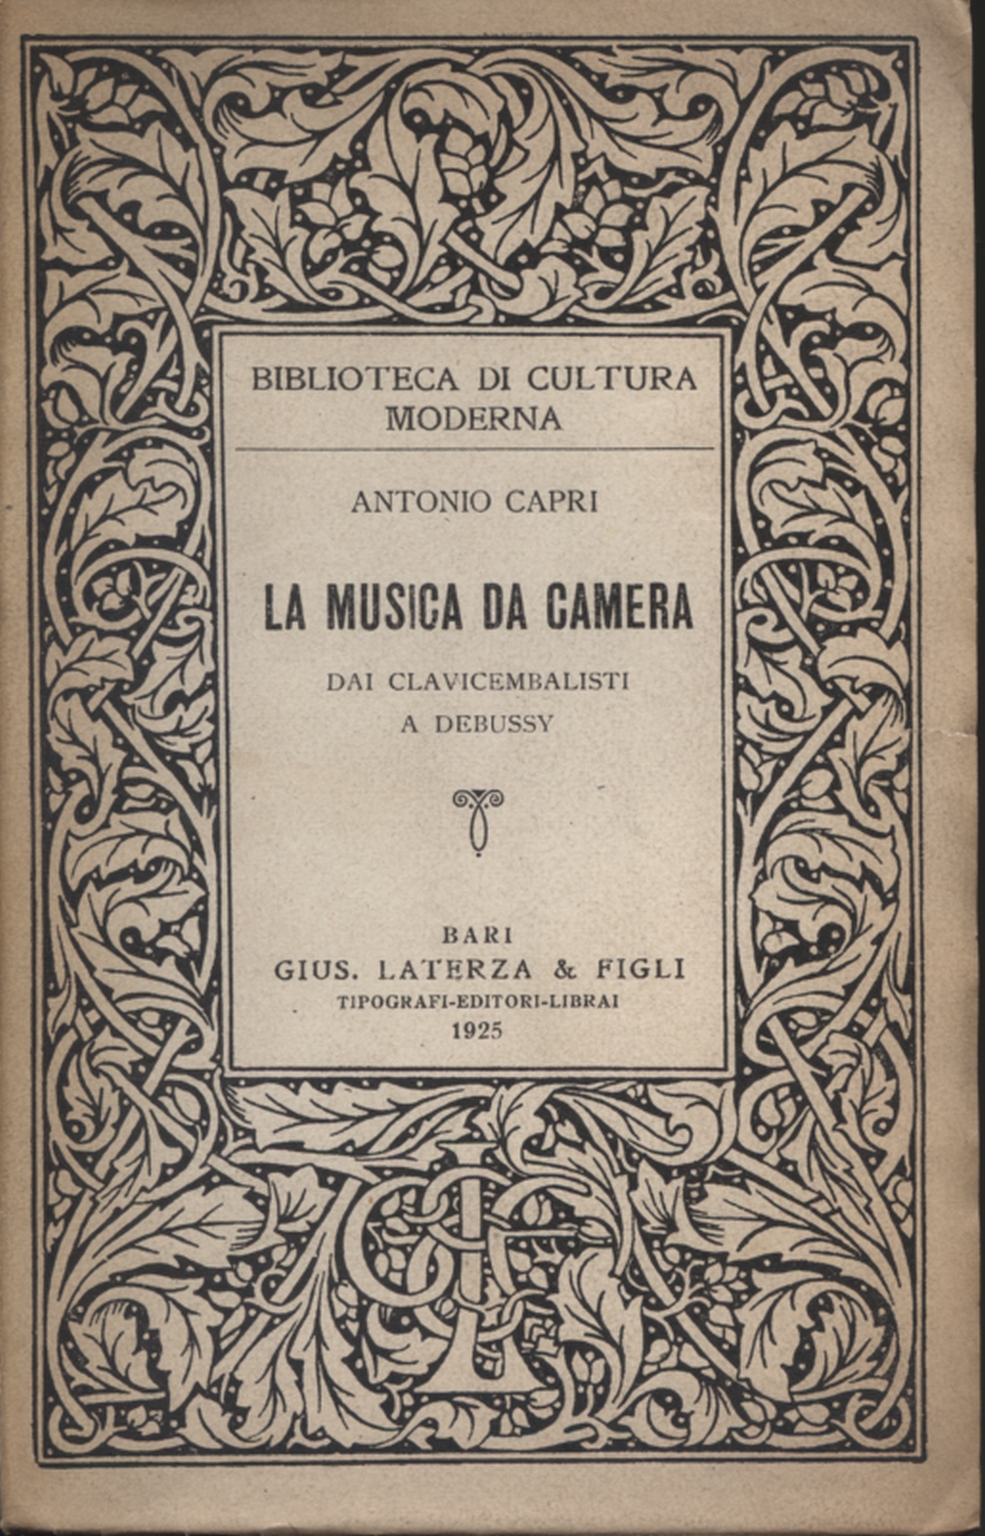 La musica da camera, Antonio Capri